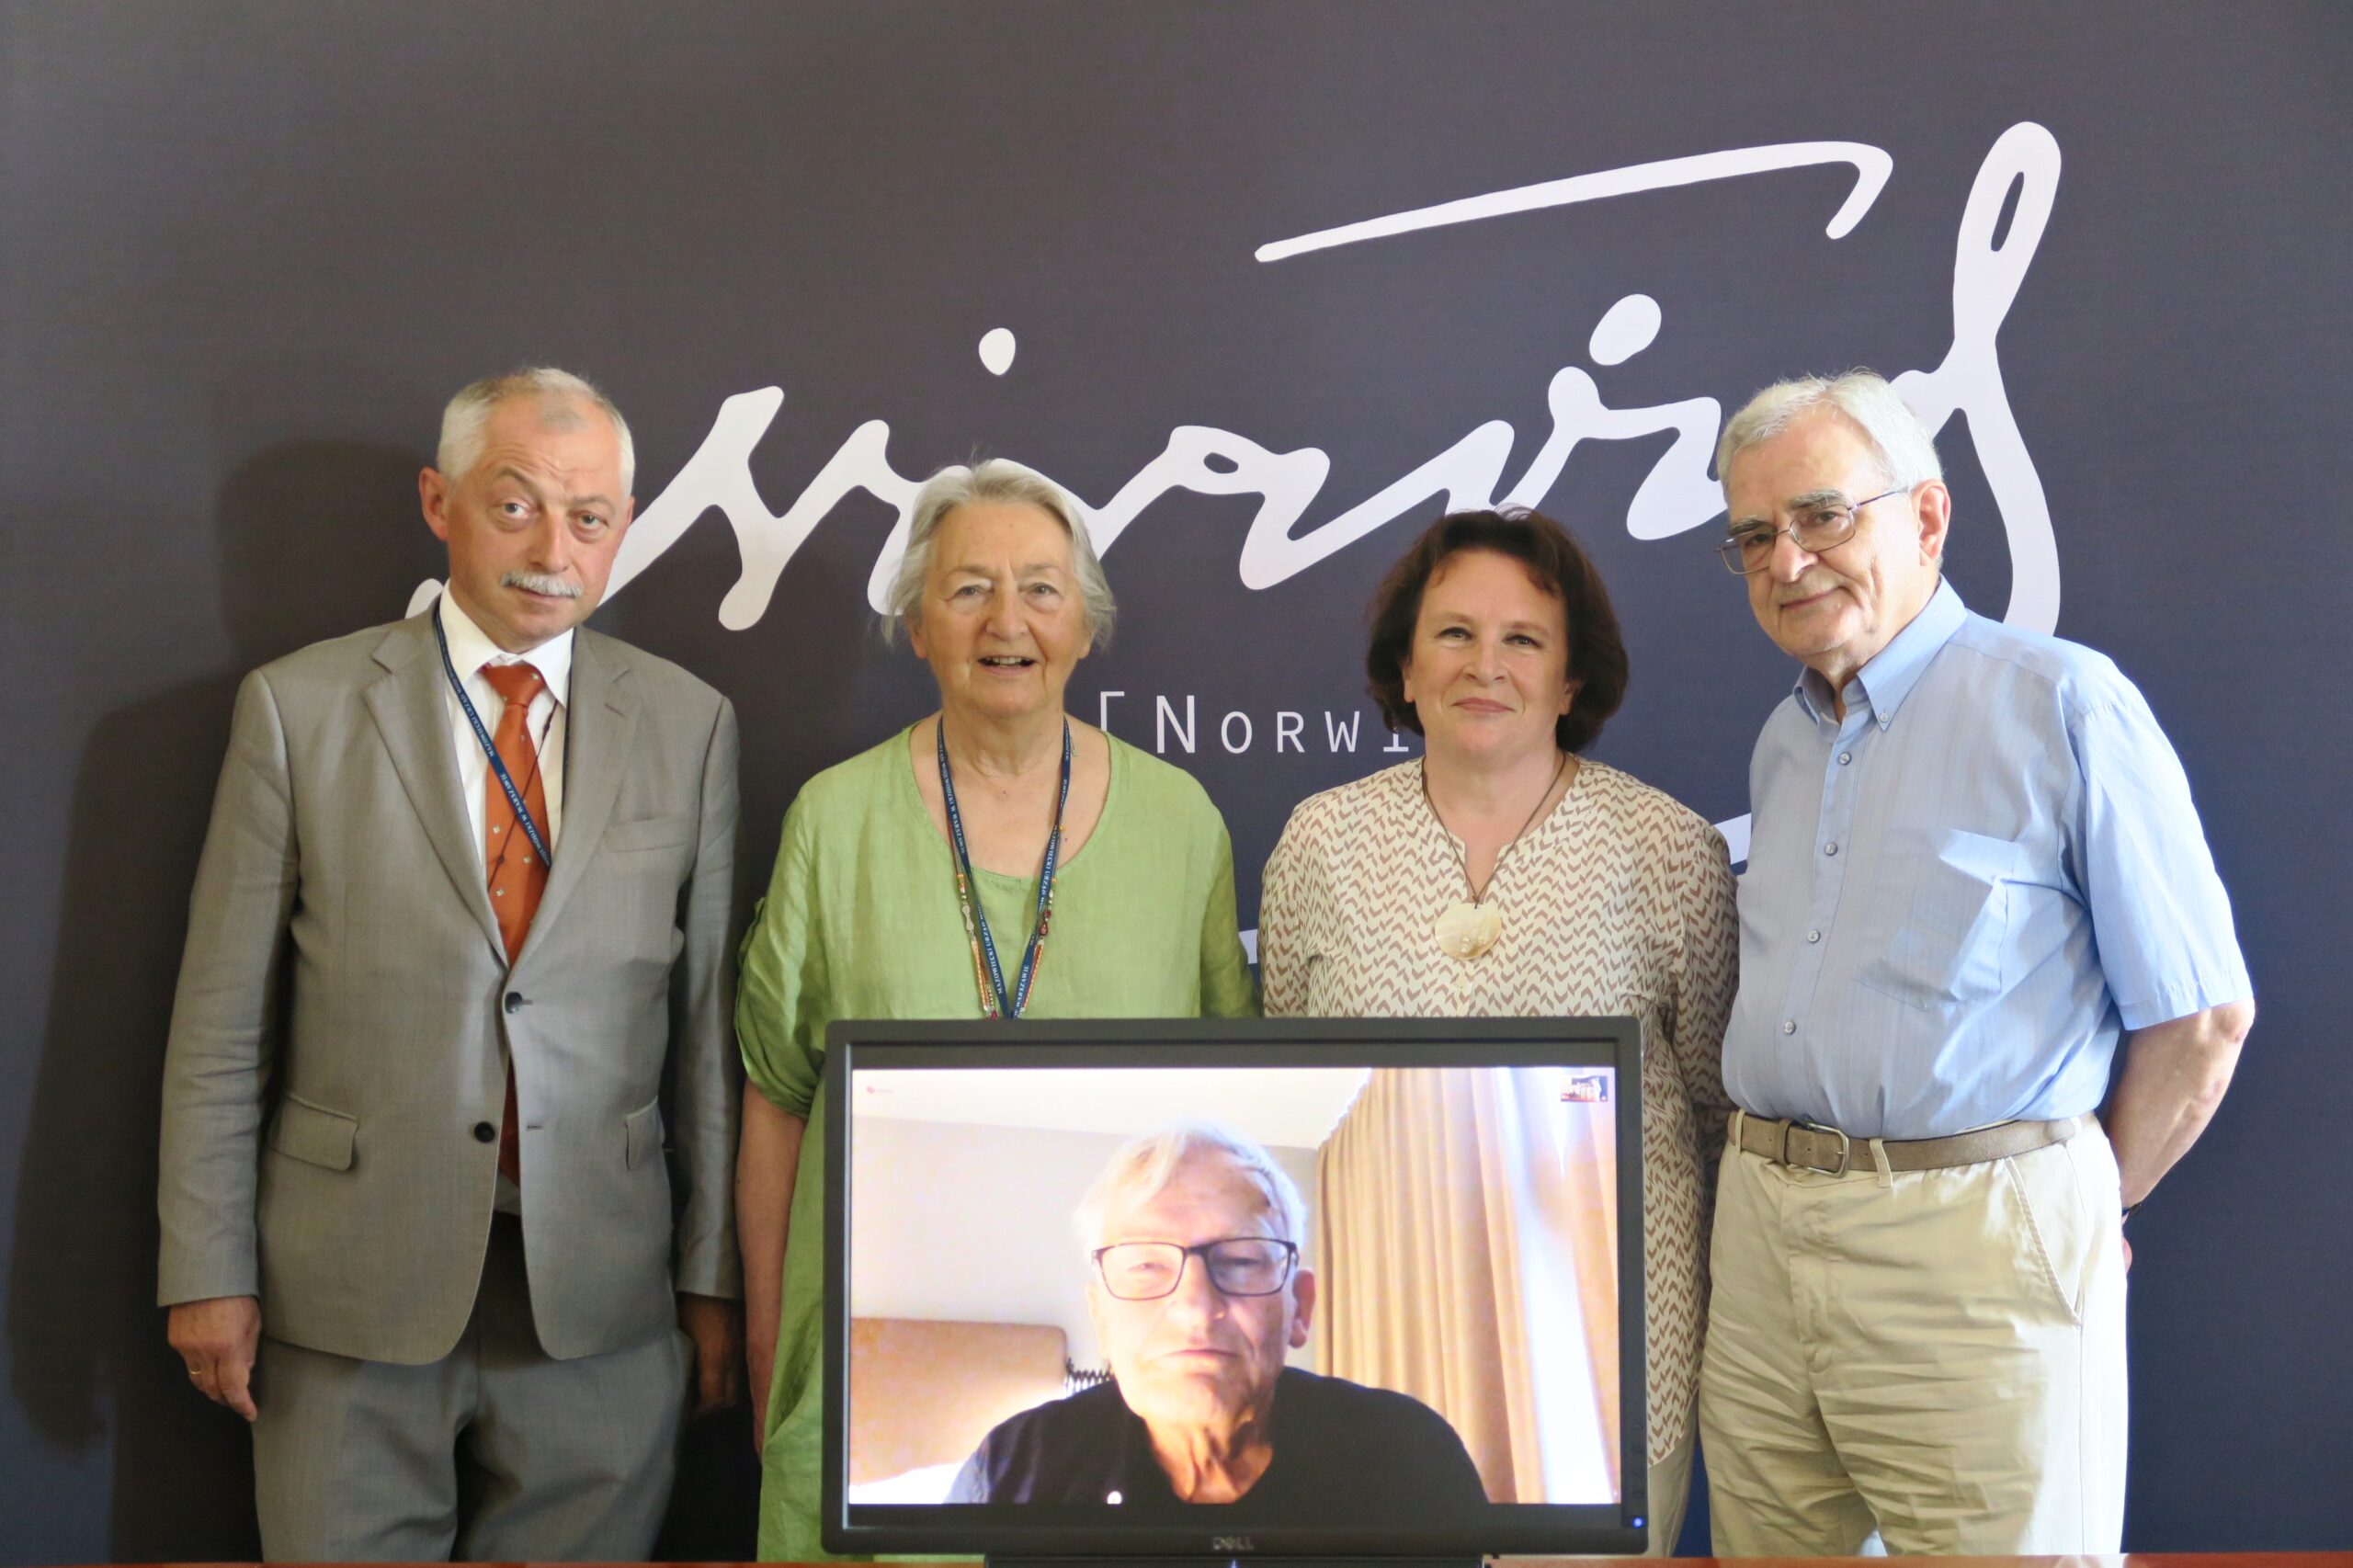 Cztery osoby stoją na tle ścianki z logo Nagrody Norwida. Przed nimi stoi monitor, na którym widać twarz jednej osoby